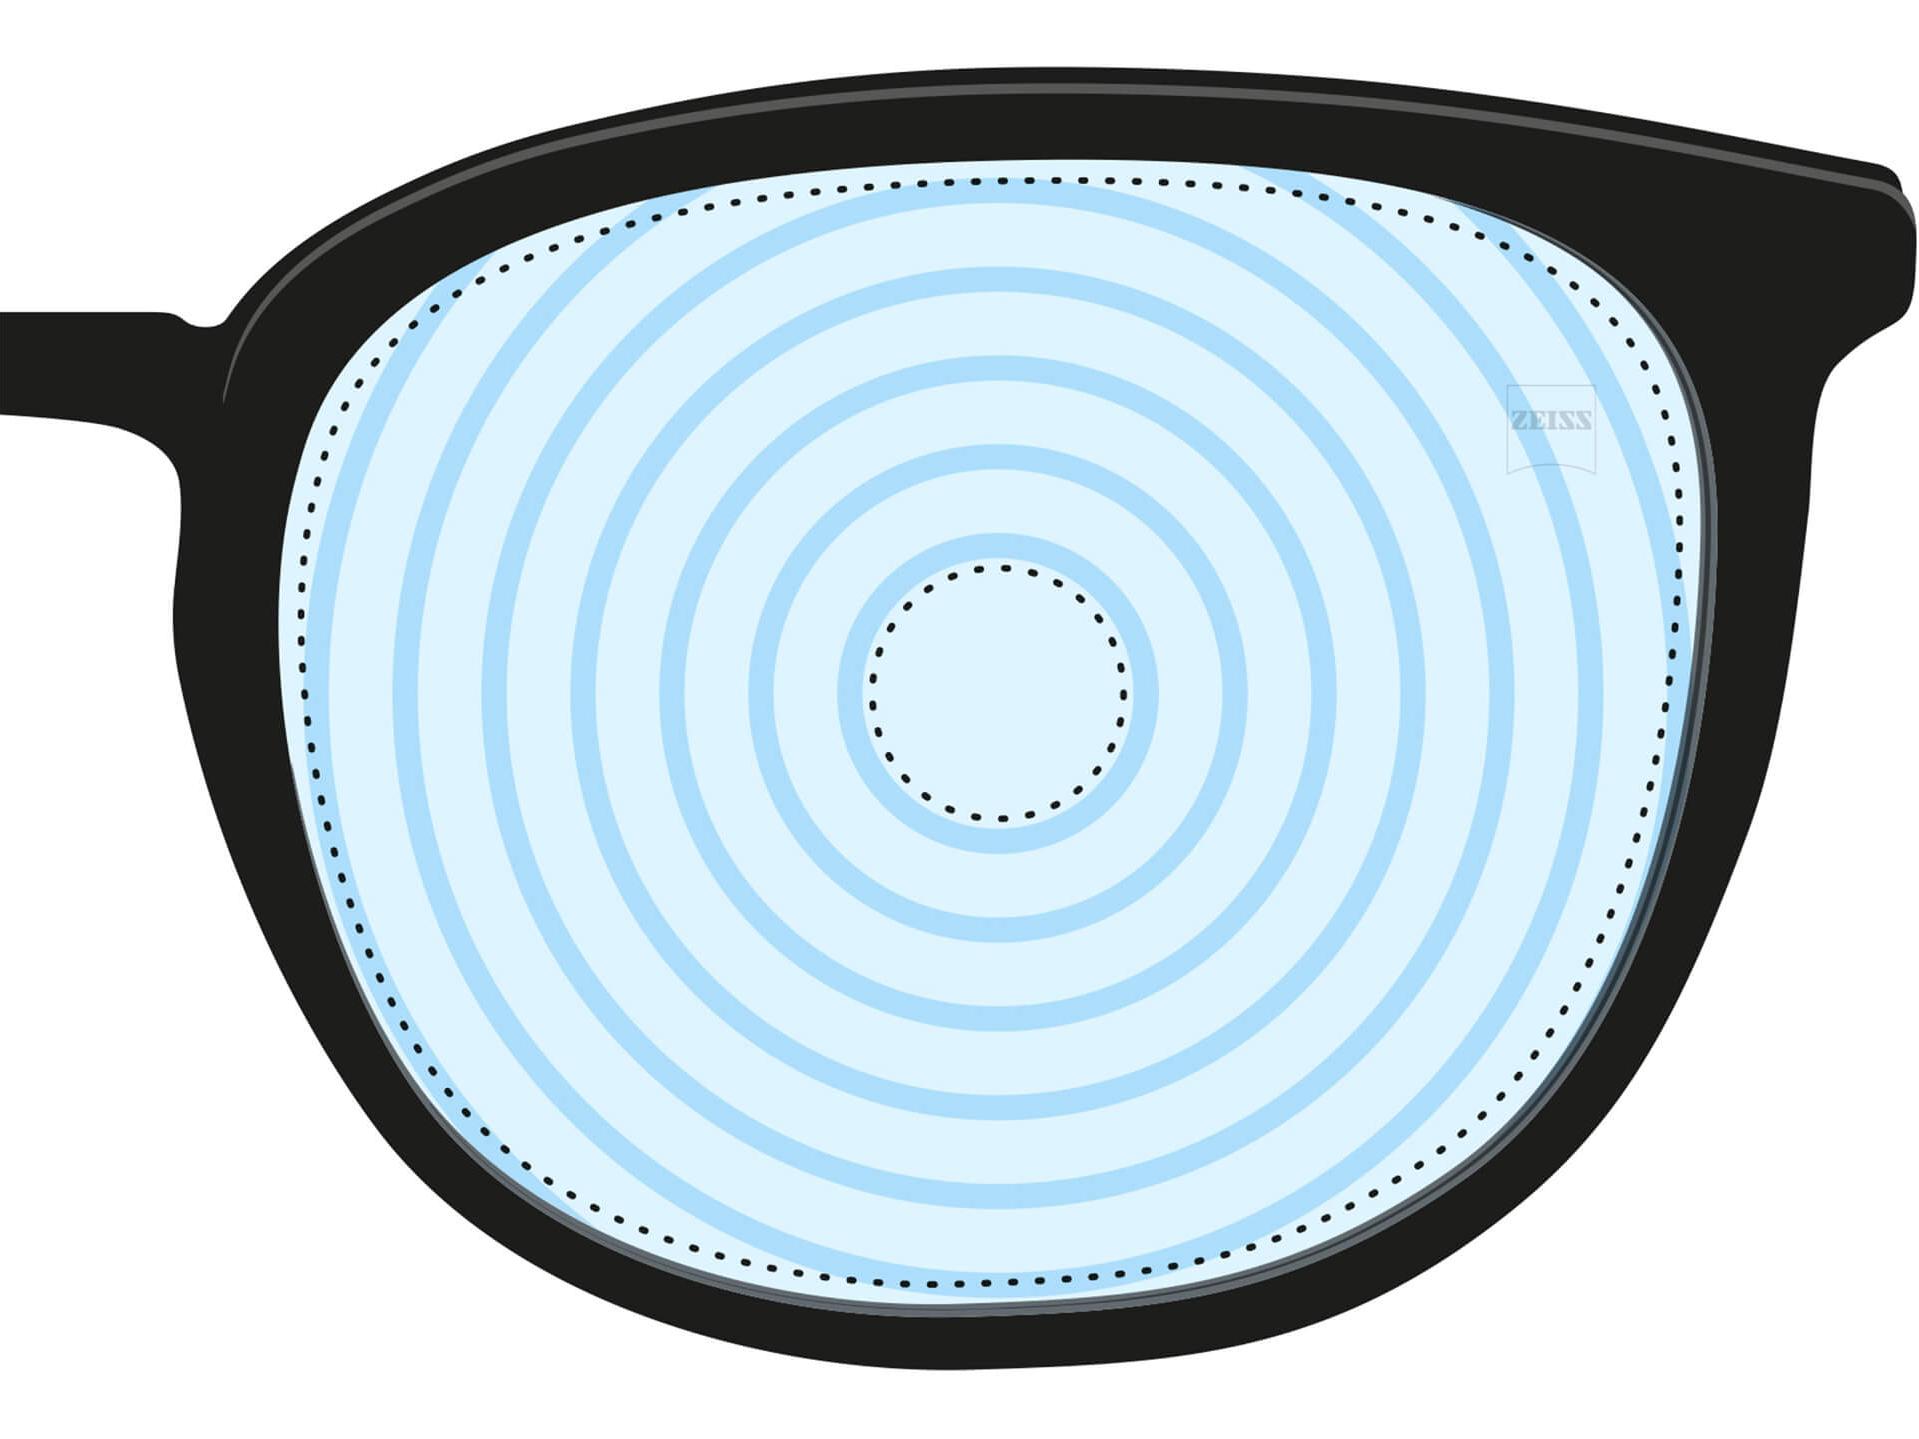 En illustration af et brilleglas til behandling af myopi. Det har koncentriske cirkler, der repræsenterer de forskellige glasstyrker. Det er et eksempel på et brilleglasdesign til et bestemt formål.